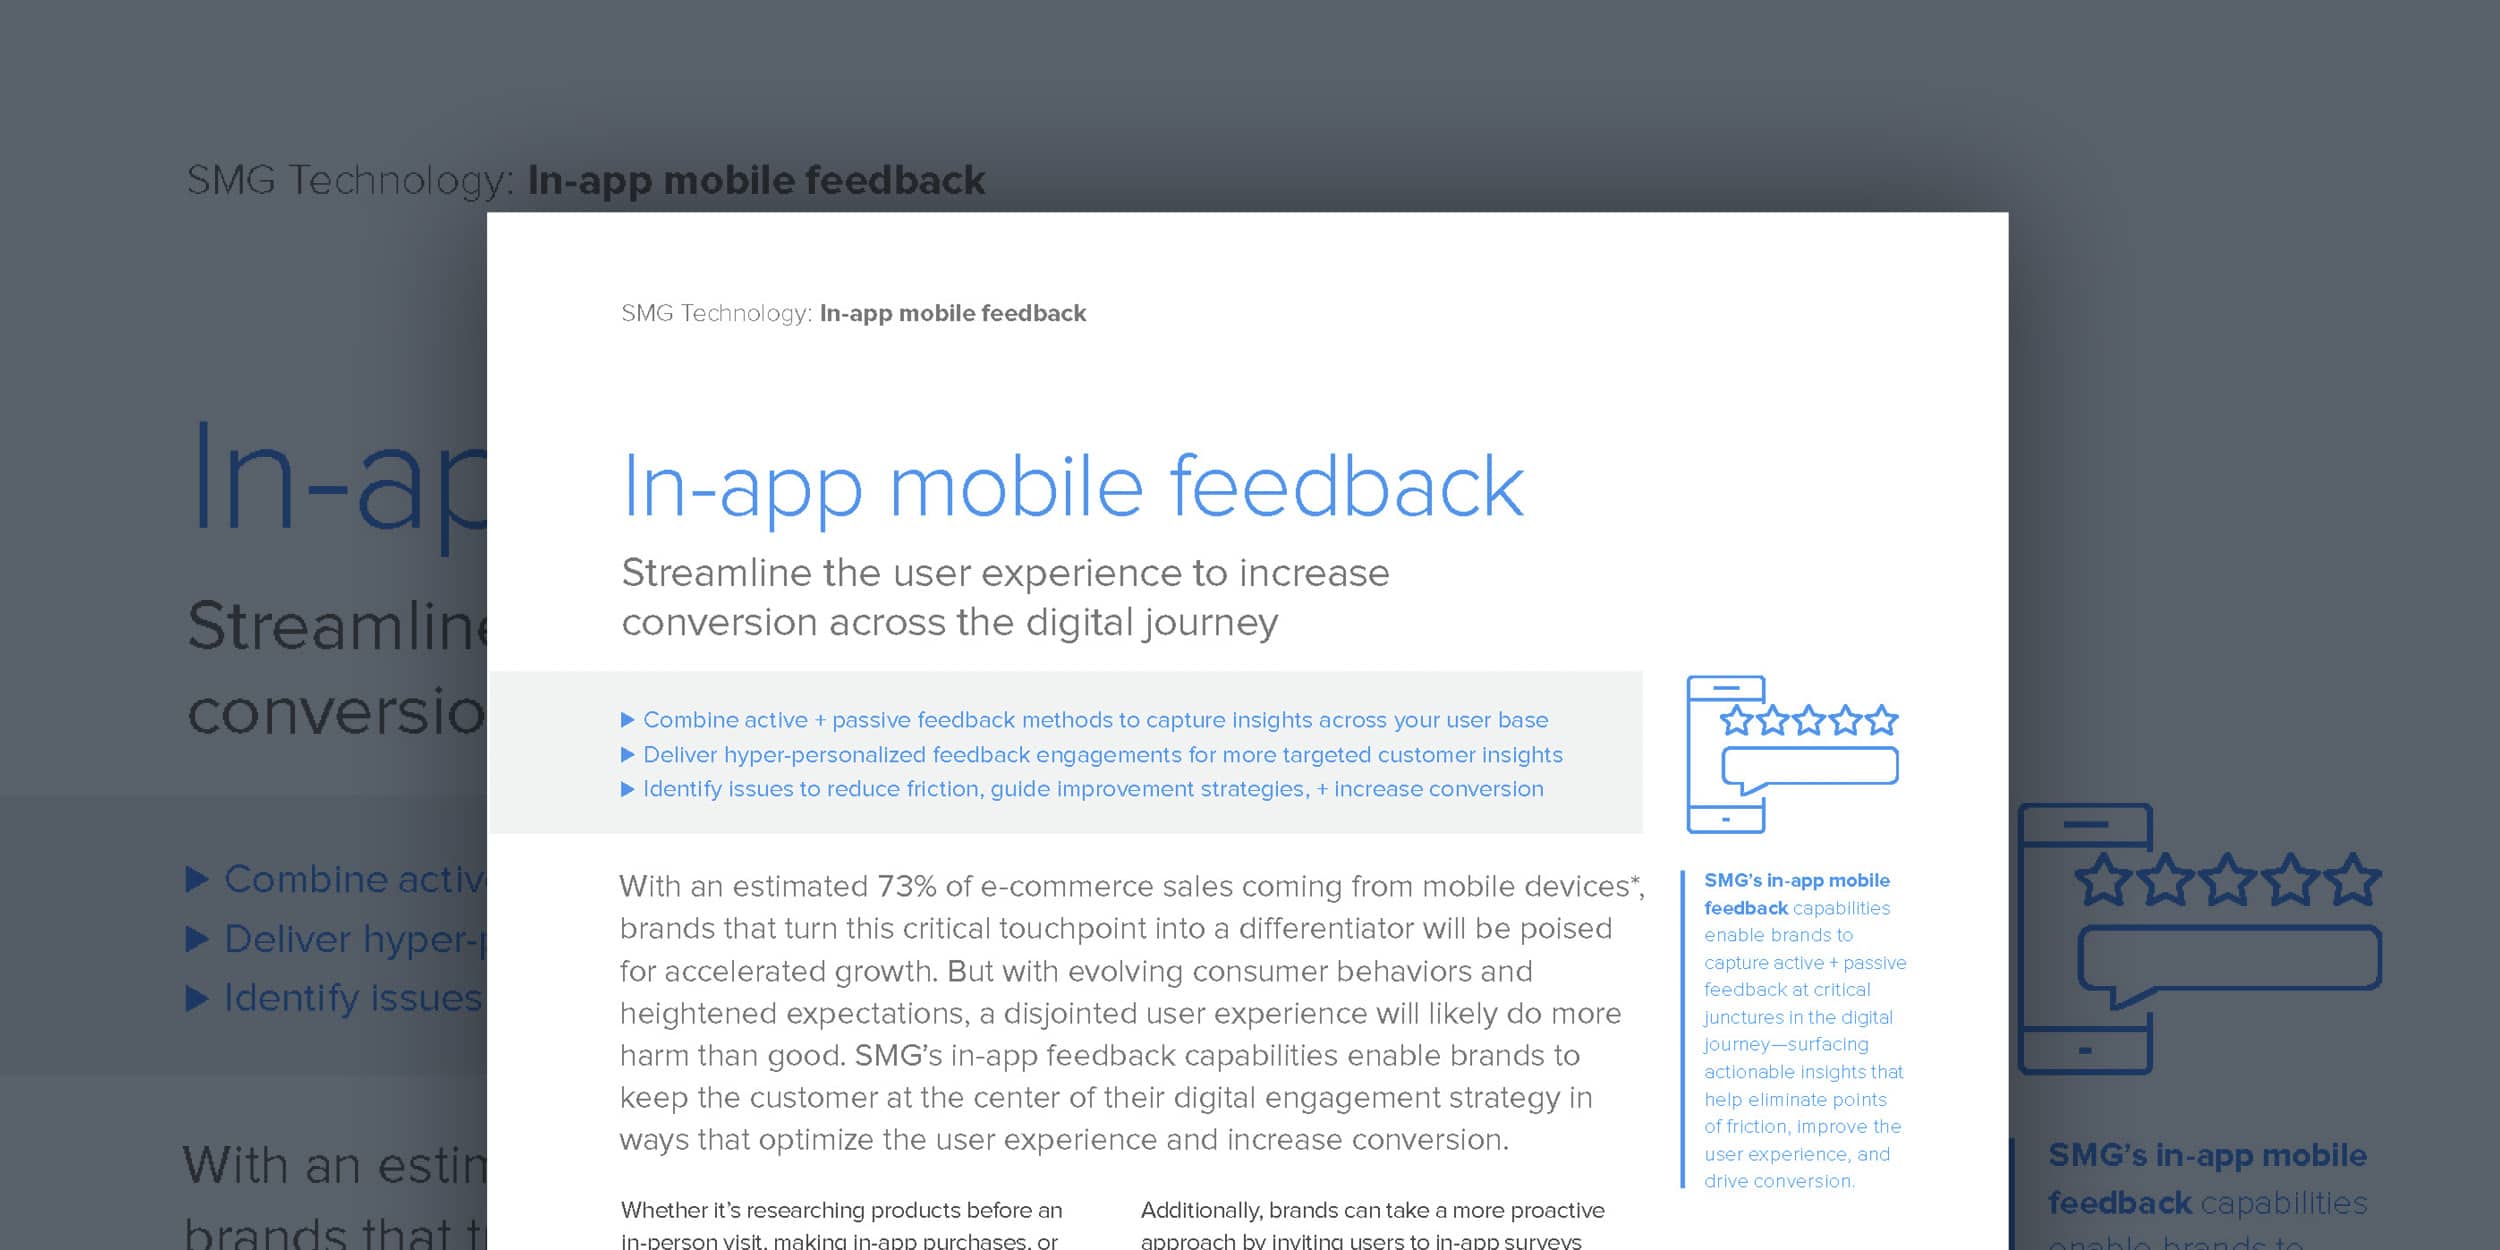 In-app mobile feedback